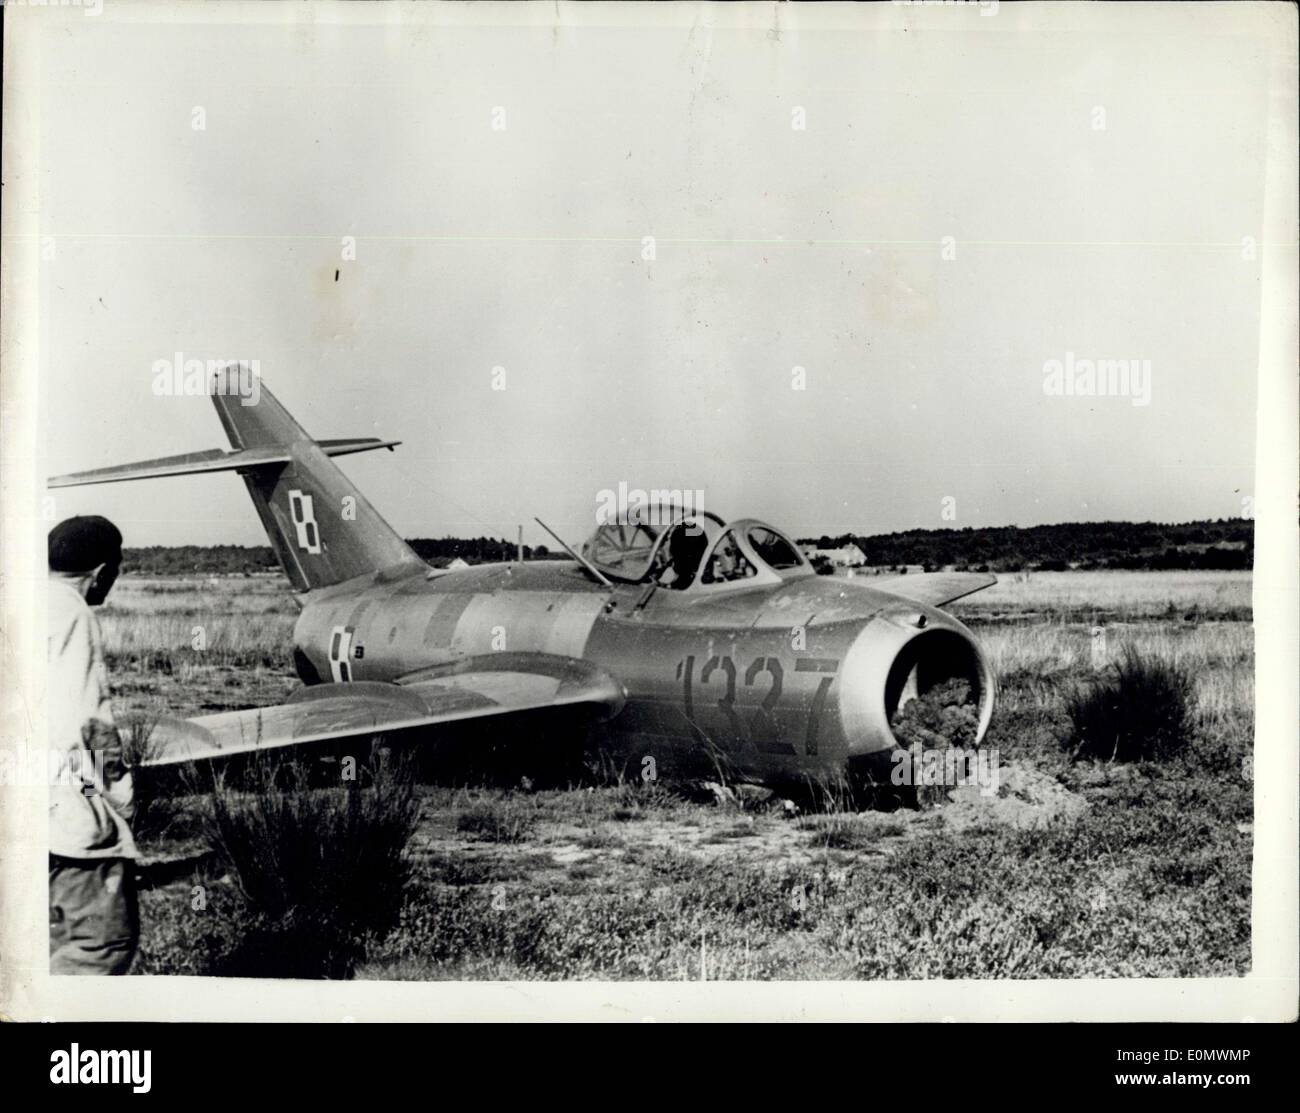 Septembre 27, 1956 - Un lieutenant de l'Armée de l'Air polonaise s'est posé l'un des derniers avions de combat de type MIG sur le petit aérodrome de Roenne sur l'île baltique de Bornholm et demandé l'asile politique. Le MIG est d'une conception auparavant inconnu des experts occidentaux. On pense qu'elle est une version améliorée du MIG 15. L'aile de l'avion a été endommagé lorsque le pilote pose l'appareil sur une partie de l'aérodrome. Photo : Vue de l'avions MIG, après l'atterrissage sur l'île danoise de Bornholm. Banque D'Images